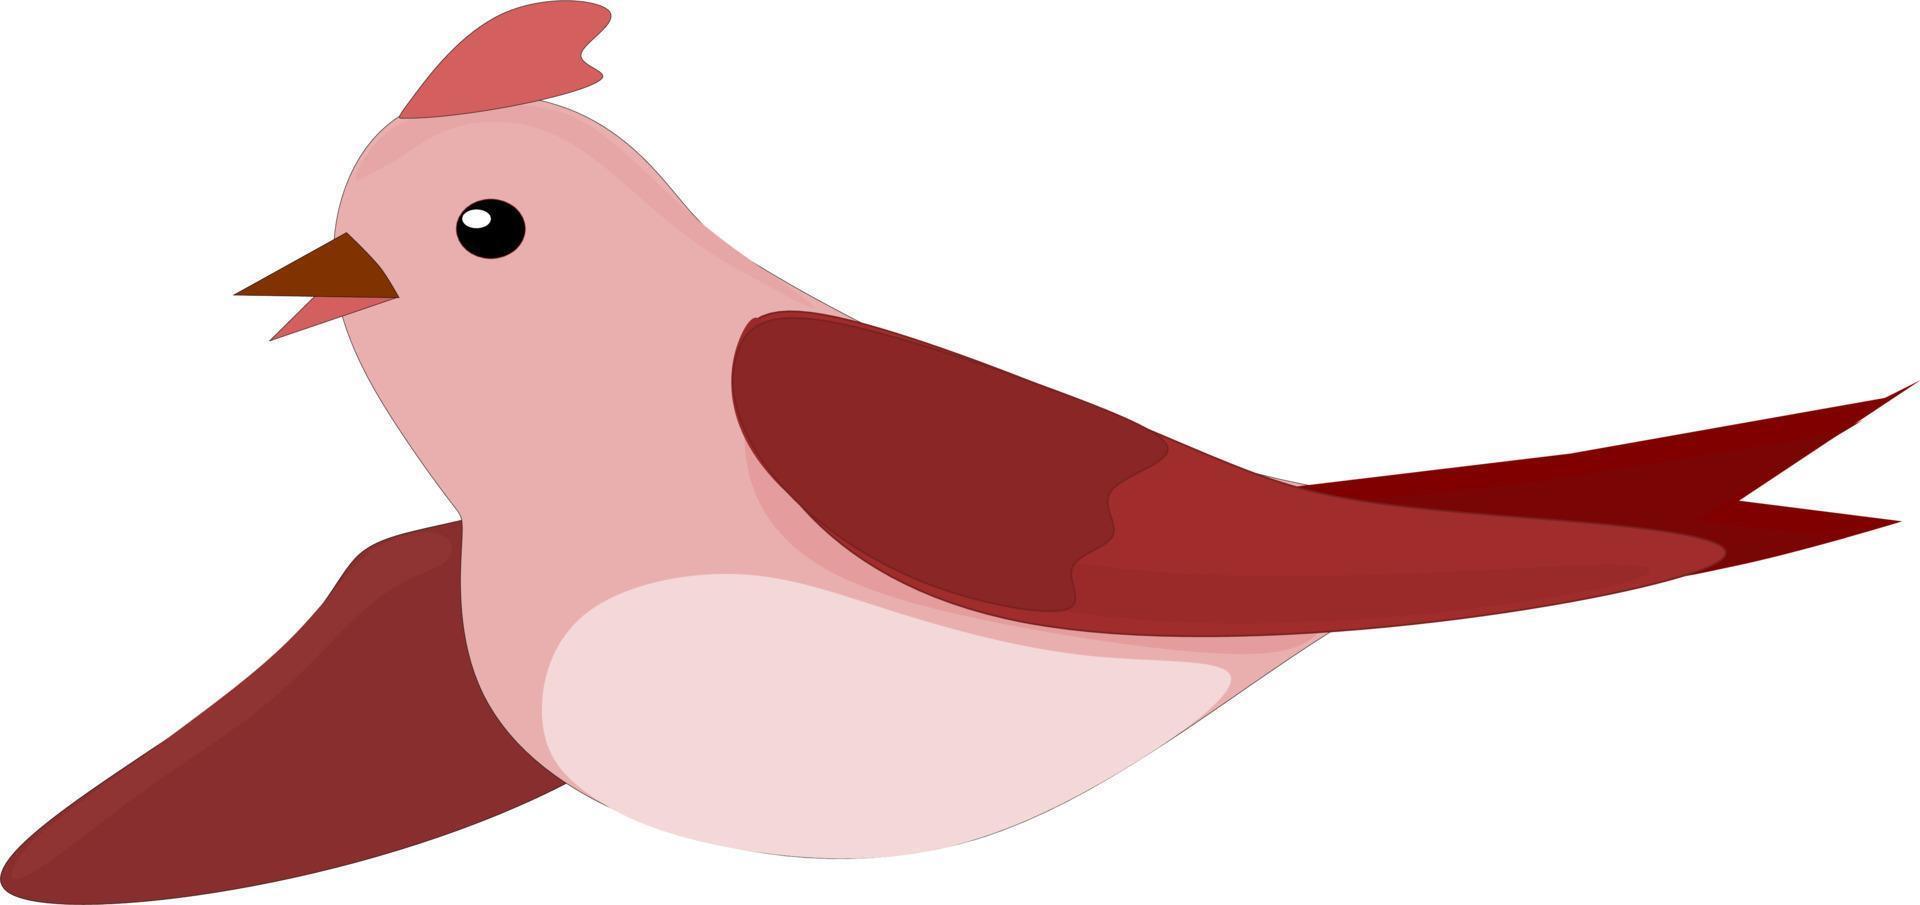 Cute cartoon bird vector illustration. Free vector.